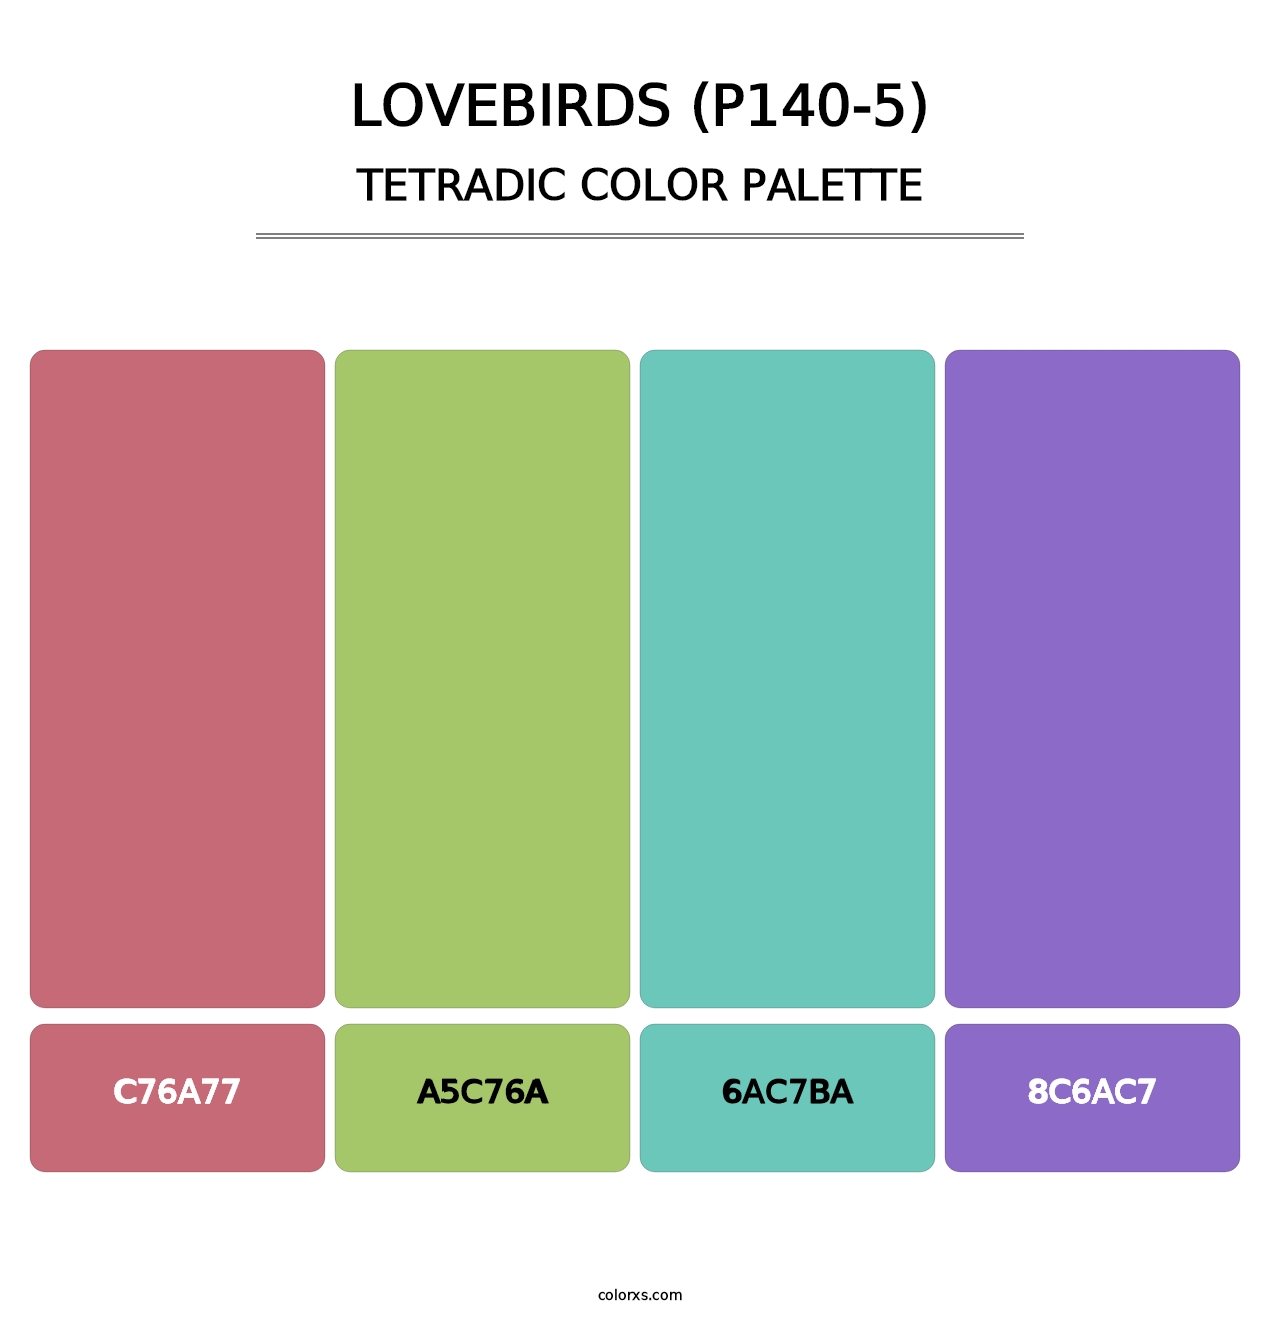 Lovebirds (P140-5) - Tetradic Color Palette